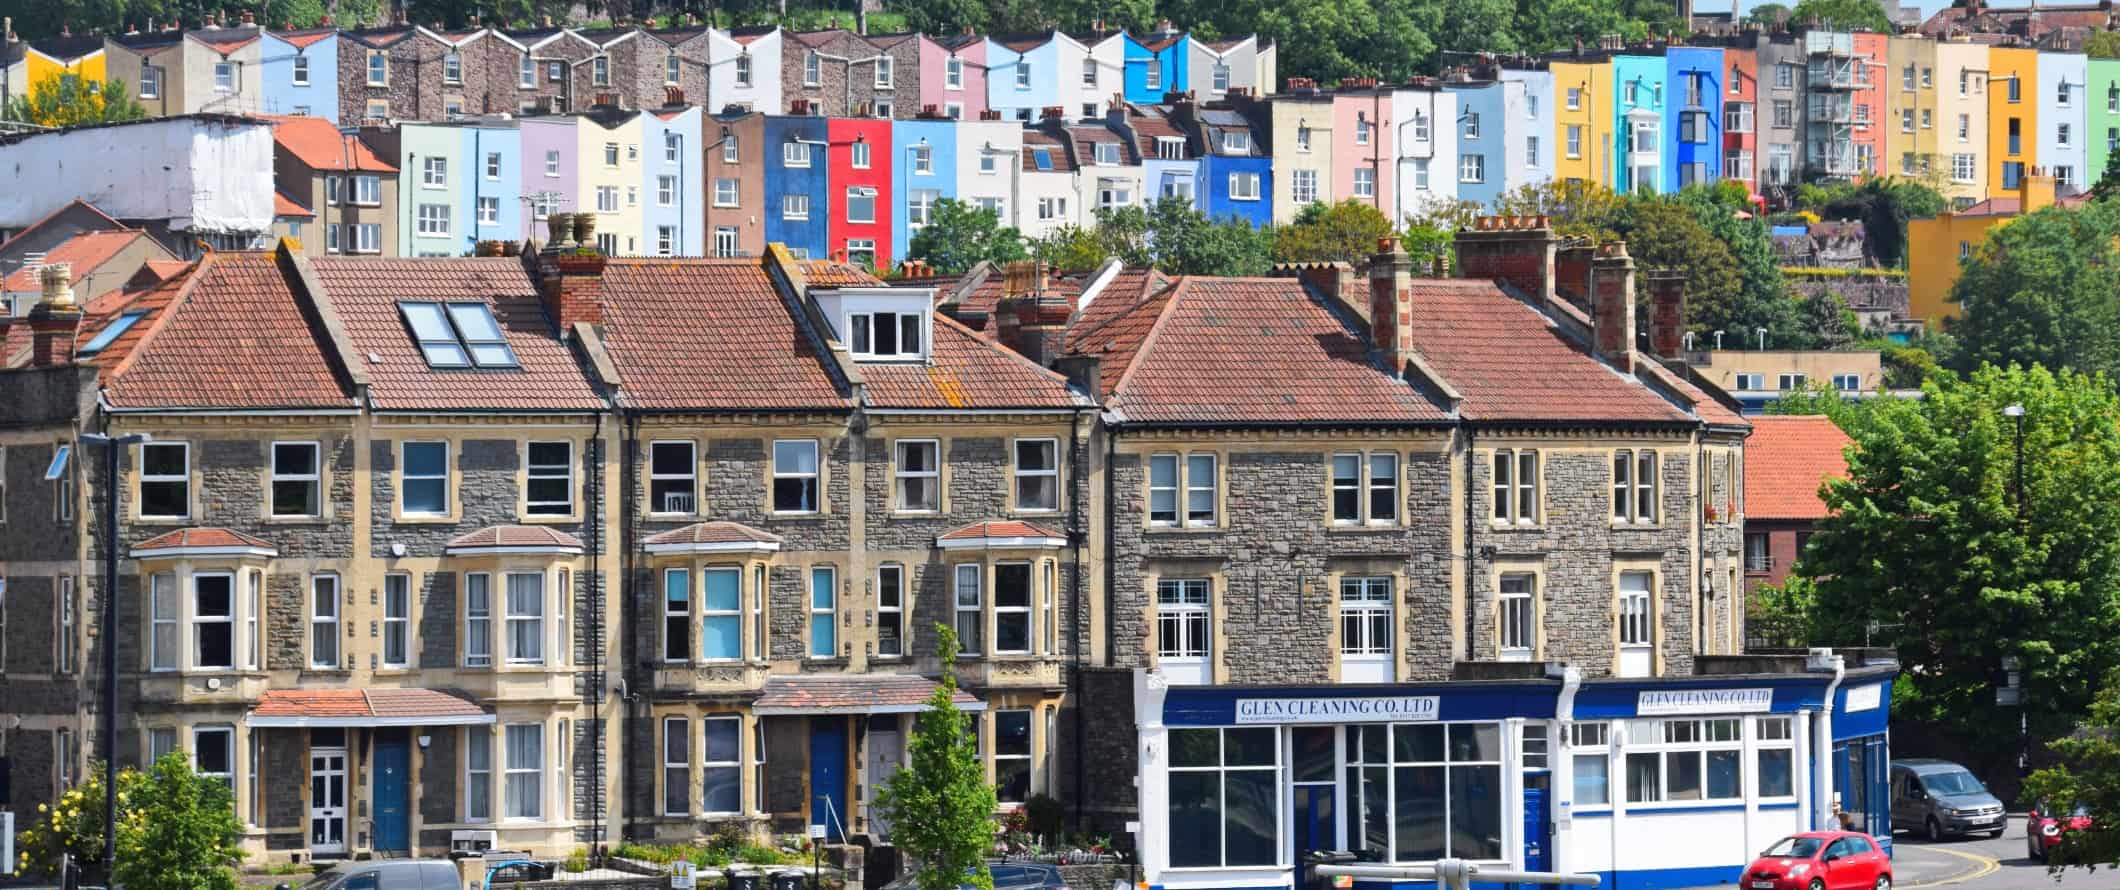 Camadas de moradias coloridas localizadas em uma colina em Bristol, Inglaterra